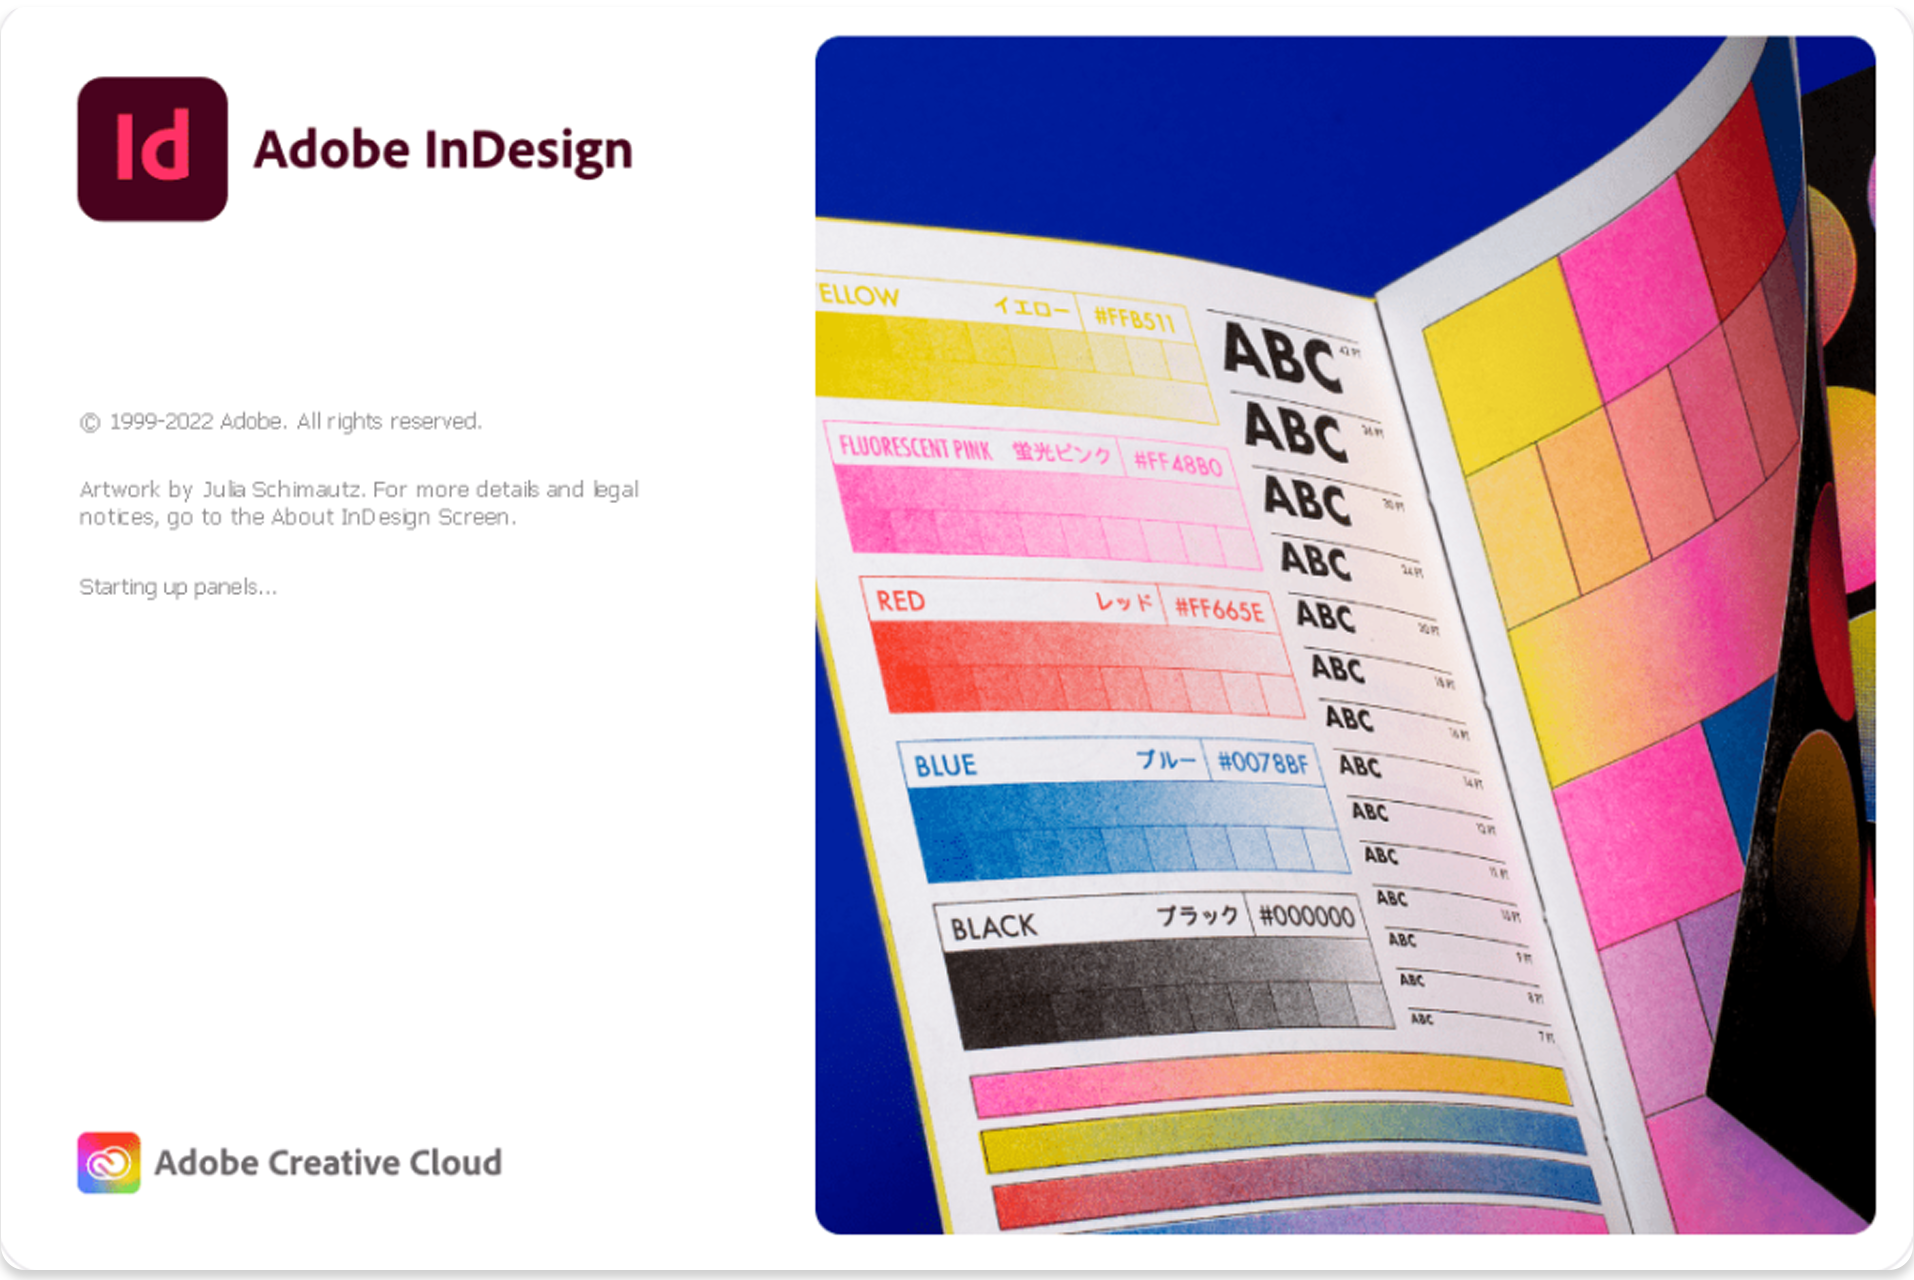 Adobe InDesign คือโปรแกรมที่ถูกออกแบบมาใช้กับงานครีเอทีฟโฆษณา และการจัดการงาน Publication สื่อสิ่งพิมพ์ที่ยอดเยี่ยมที่สุด และถูกจัดว่าเป็นโปรแกรมที่ต้องมีสำหรับนักออกแบบมืออาชีพ